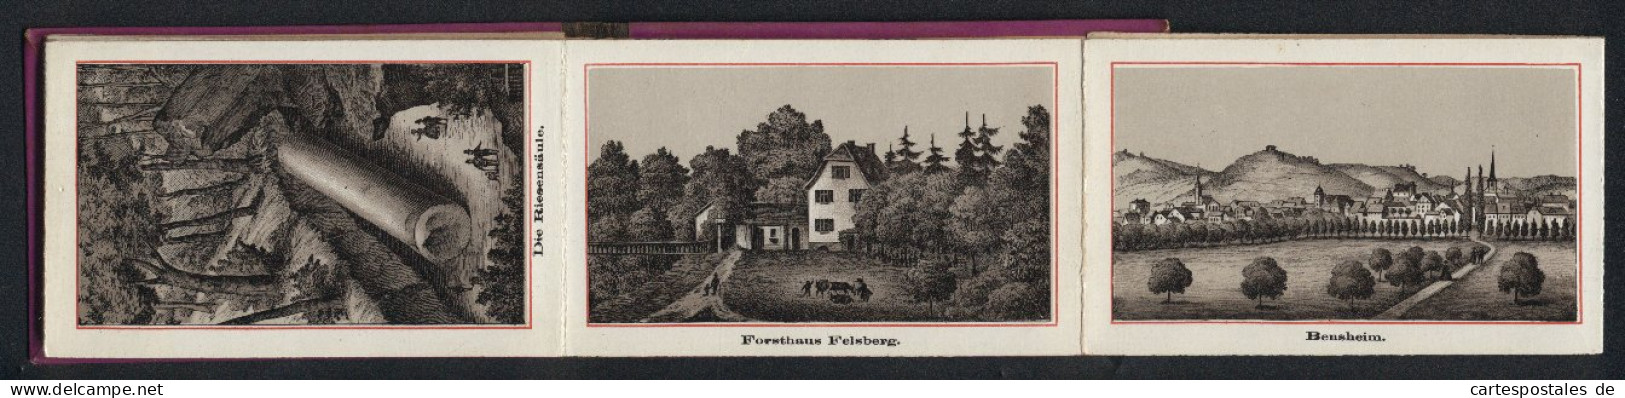 Leporello-Album Bergstrasse Mit 12 Lithographie-Ansichten, Bensheim, Heppenheim, Forsthaus Felsberg, Riesensäule, Sch  - Lithographien